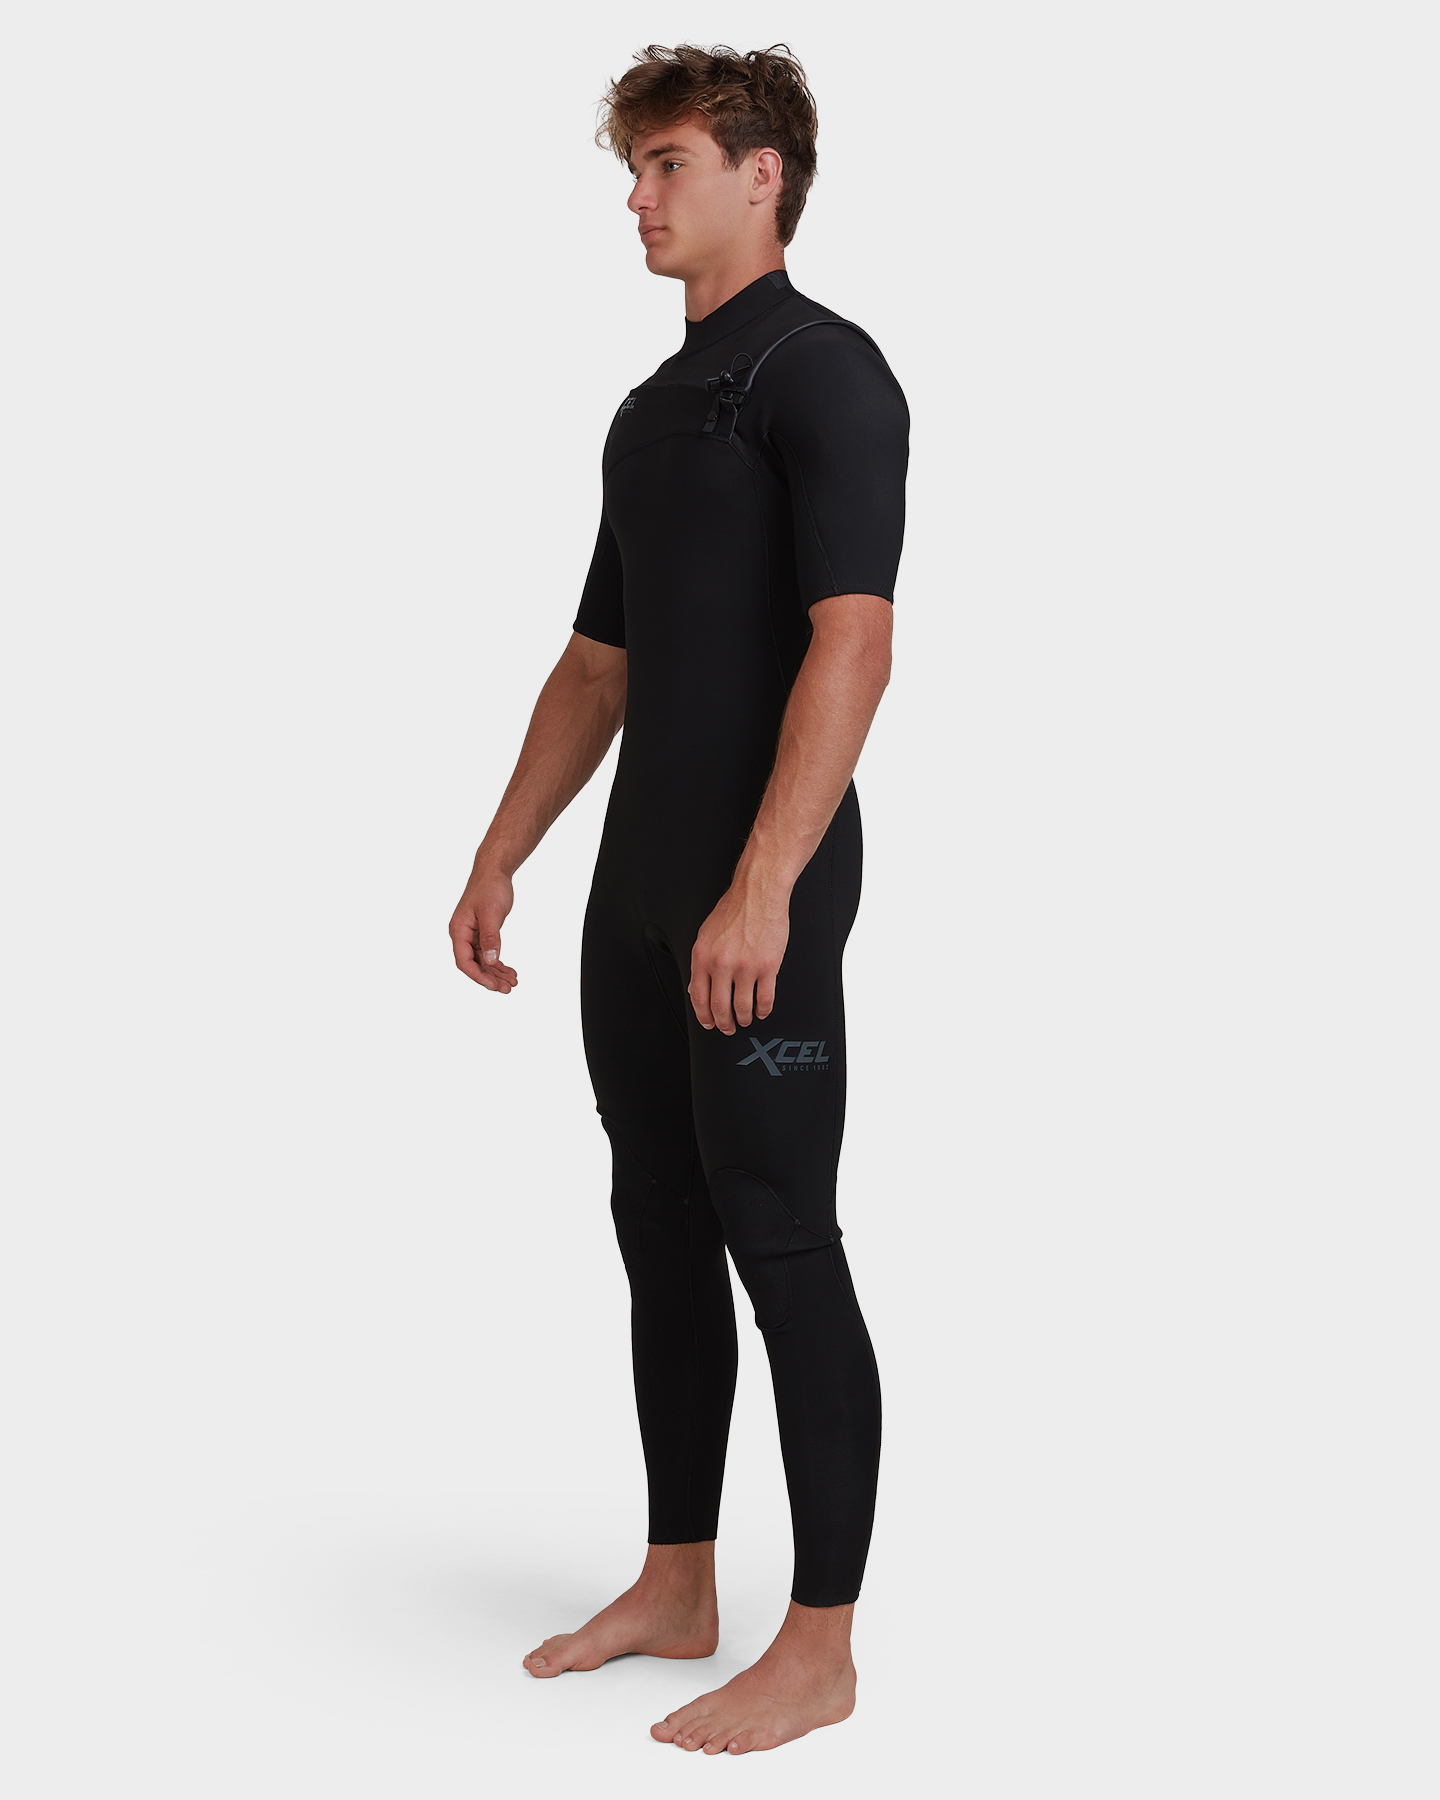 Xcel Comp 2Mm Short Sleeve Fullsuit Wetsuit - Black | SurfStitch